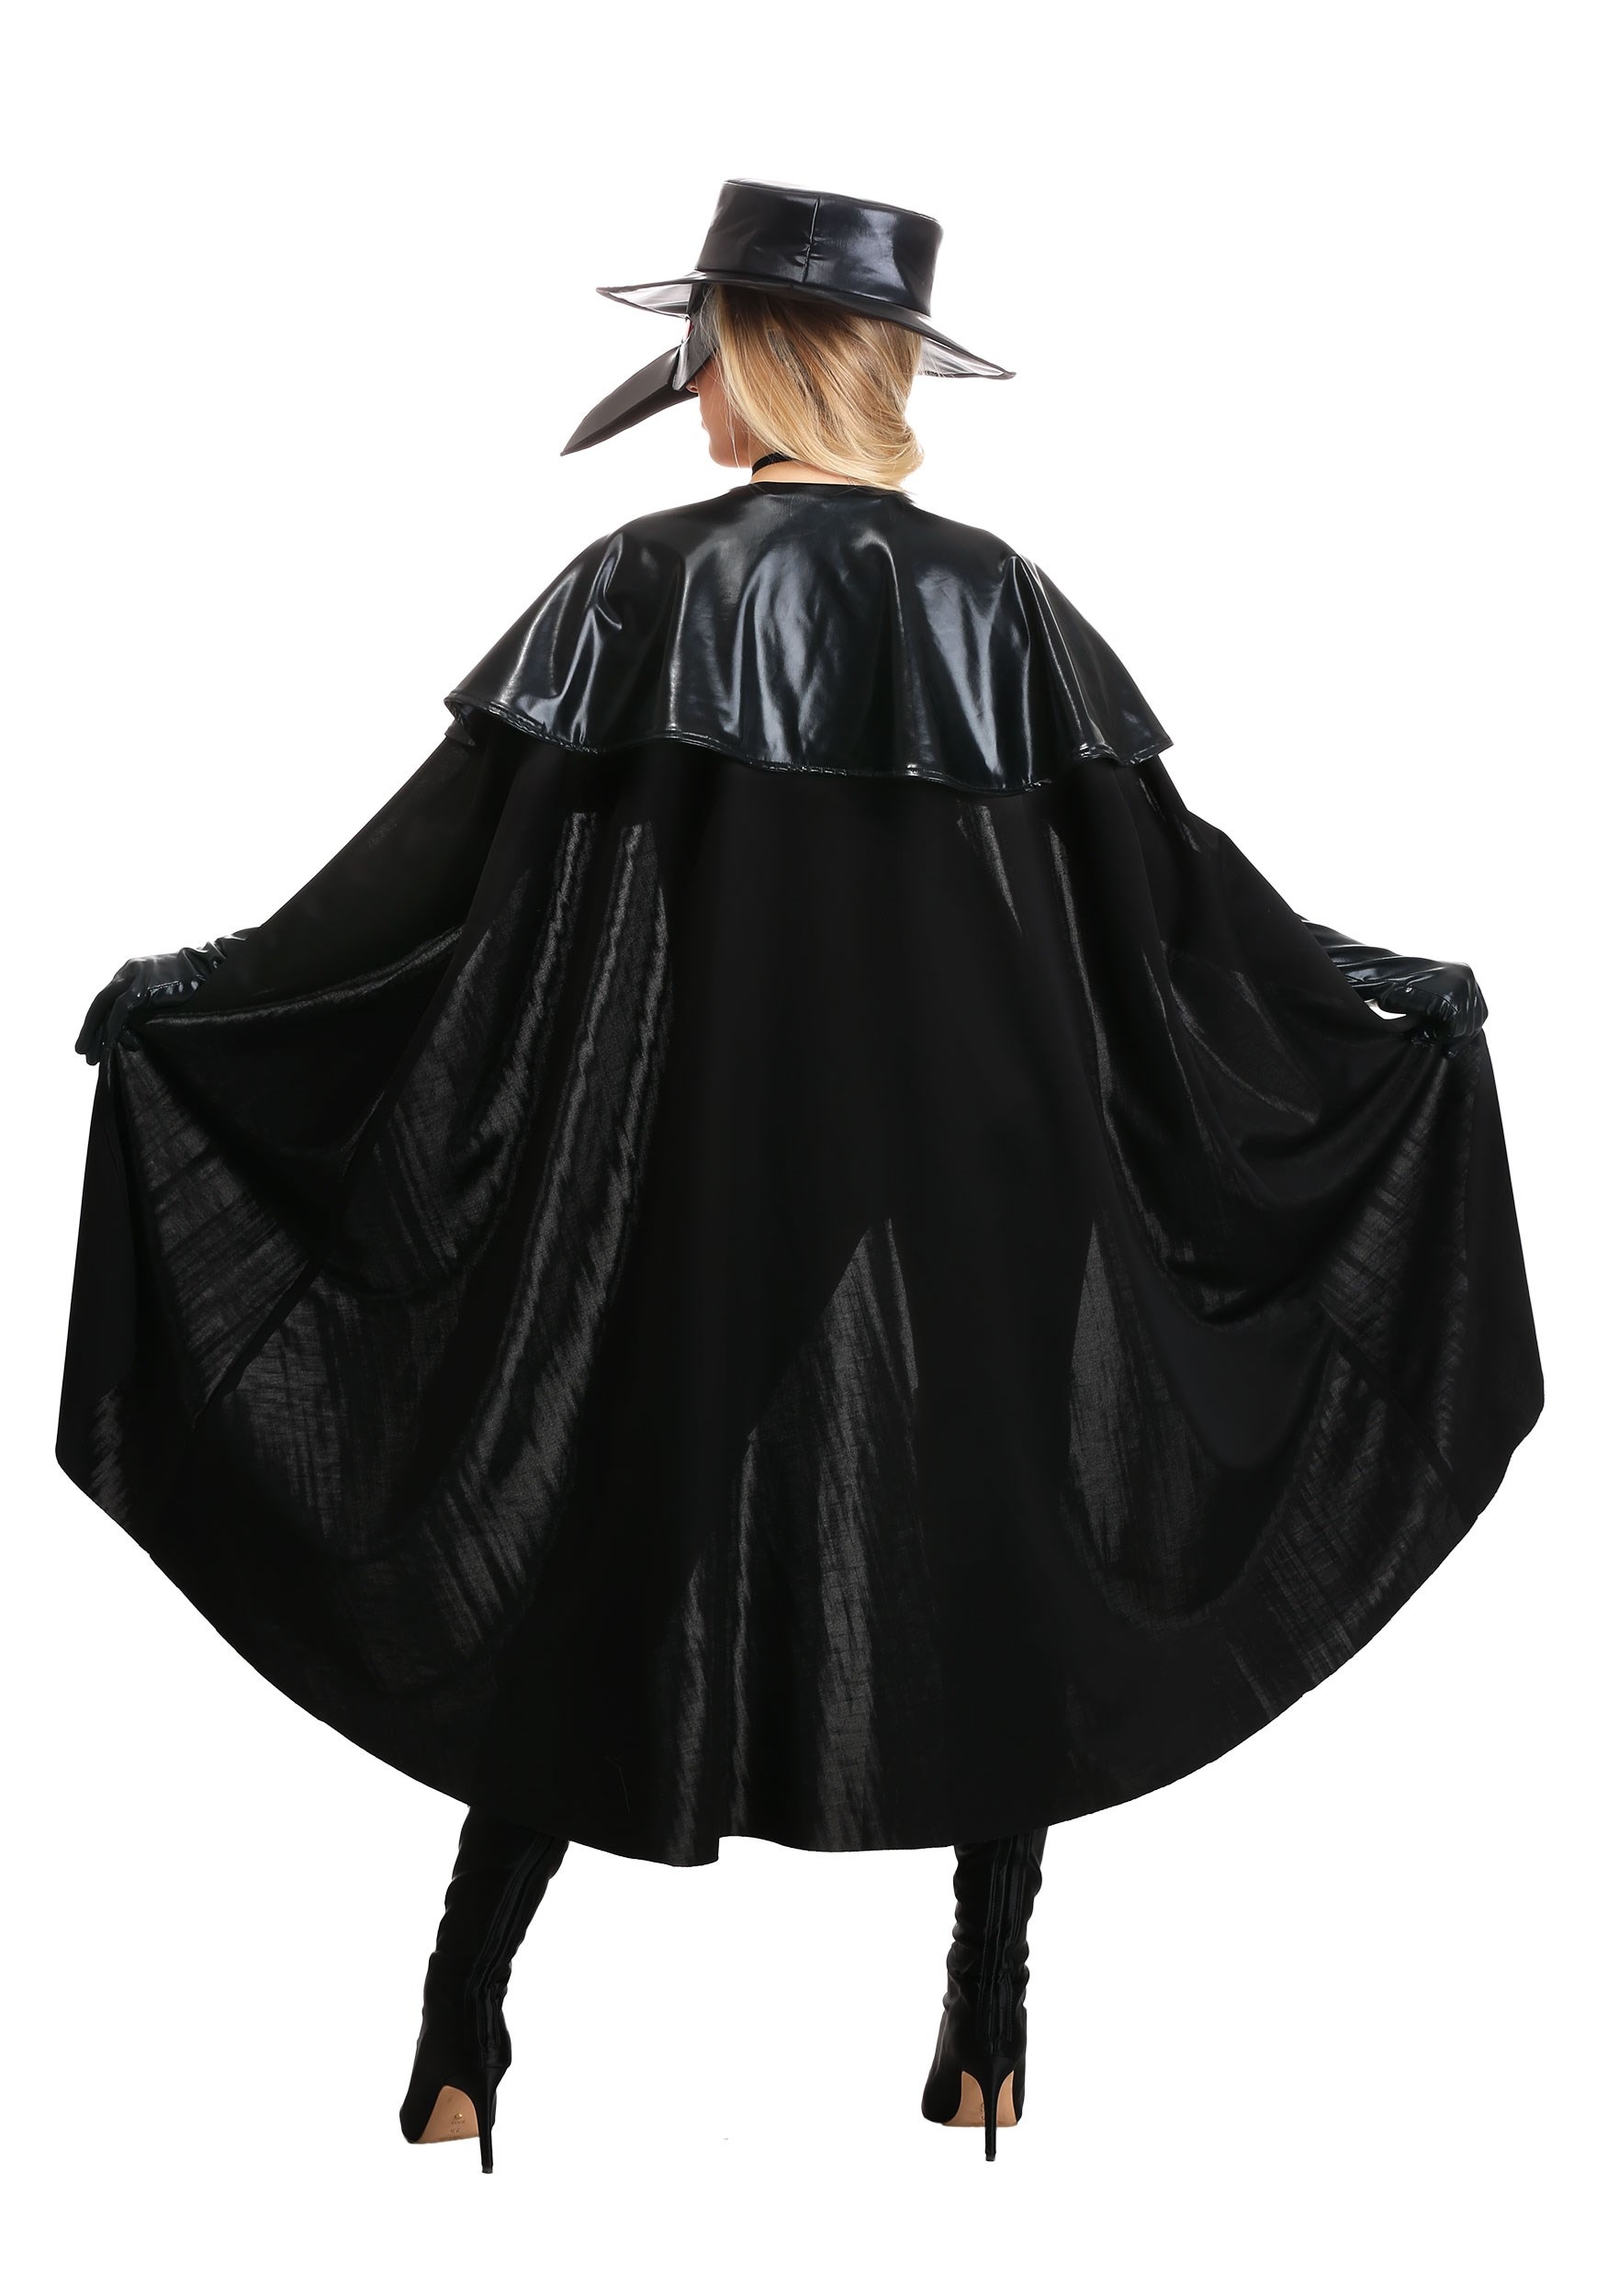 Eerie Plague Doctor Costume For Women